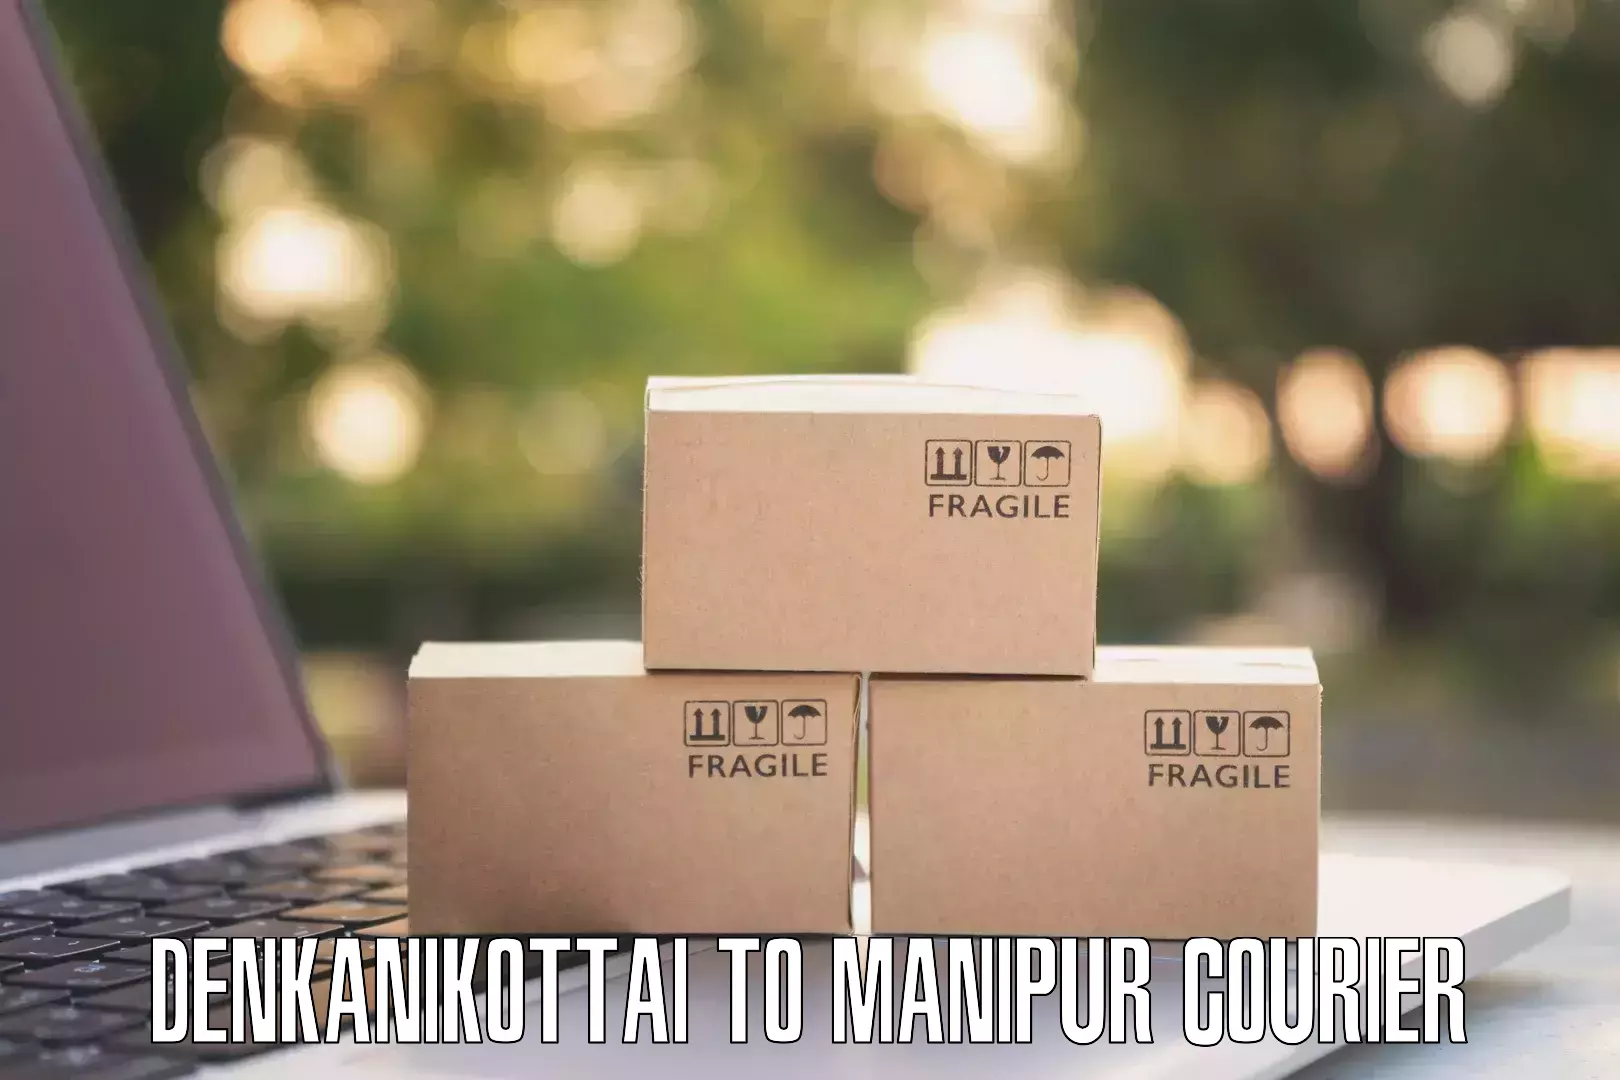 Door-to-door shipping Denkanikottai to Chandel